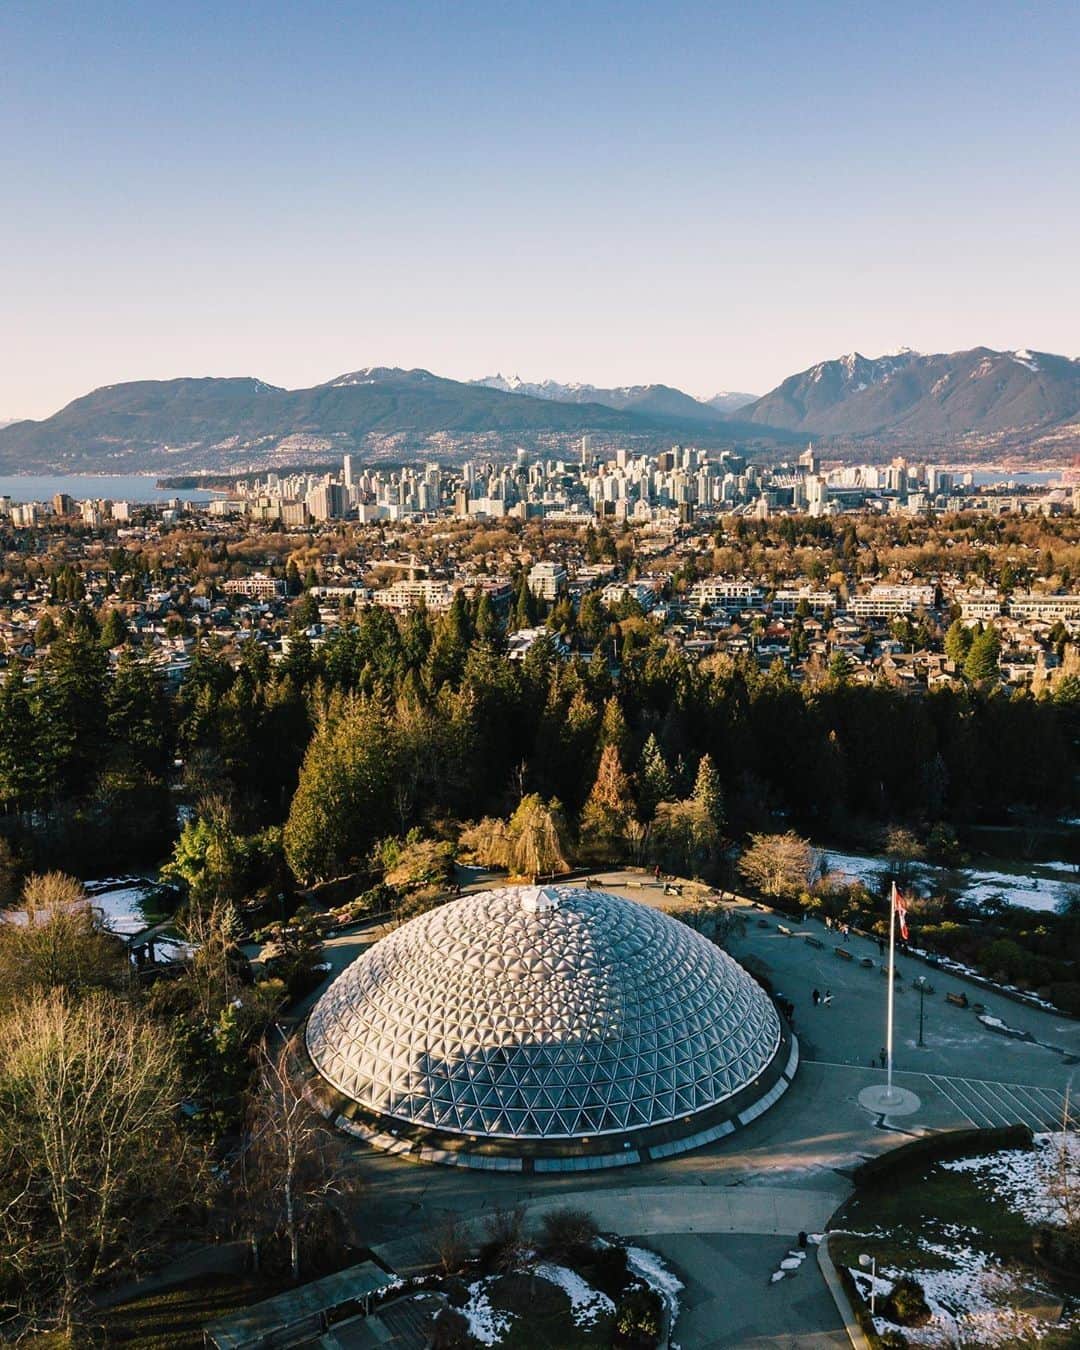 バンクーバー観光局- Tourism Vancouverのインスタグラム：「小高い丘の上にあるクイーンエリザベスパークは、バンクーバー市民の憩いの場所です。園内にはドーム型の熱帯植物が鑑賞できるブローデル温室があったり、春になると桜も咲き誇り、多くの人が訪れます。⁠ 📷 : @romanlanon(Instagram)⁠ .⁠ .⁠ .⁠ #カナダ #バンクーバー #Vancouver #旅 #旅行 #女子旅 #旅好き #一人旅 #海外旅行 #トラベル #旅女子 #旅行好きな人と繋がりたい #旅好きな人と繋がりたい #旅行好き #旅行大好き #旅行行きたい #旅に出たい #海外 #旅の記録 #旅の思い出 #旅行記 #旅したくなるフォト #マイトリップ #マイトリ #retrip_global #風景 #温室 #ダレカニミセタイケシキ #クイーンエリザベスパーク #公園」